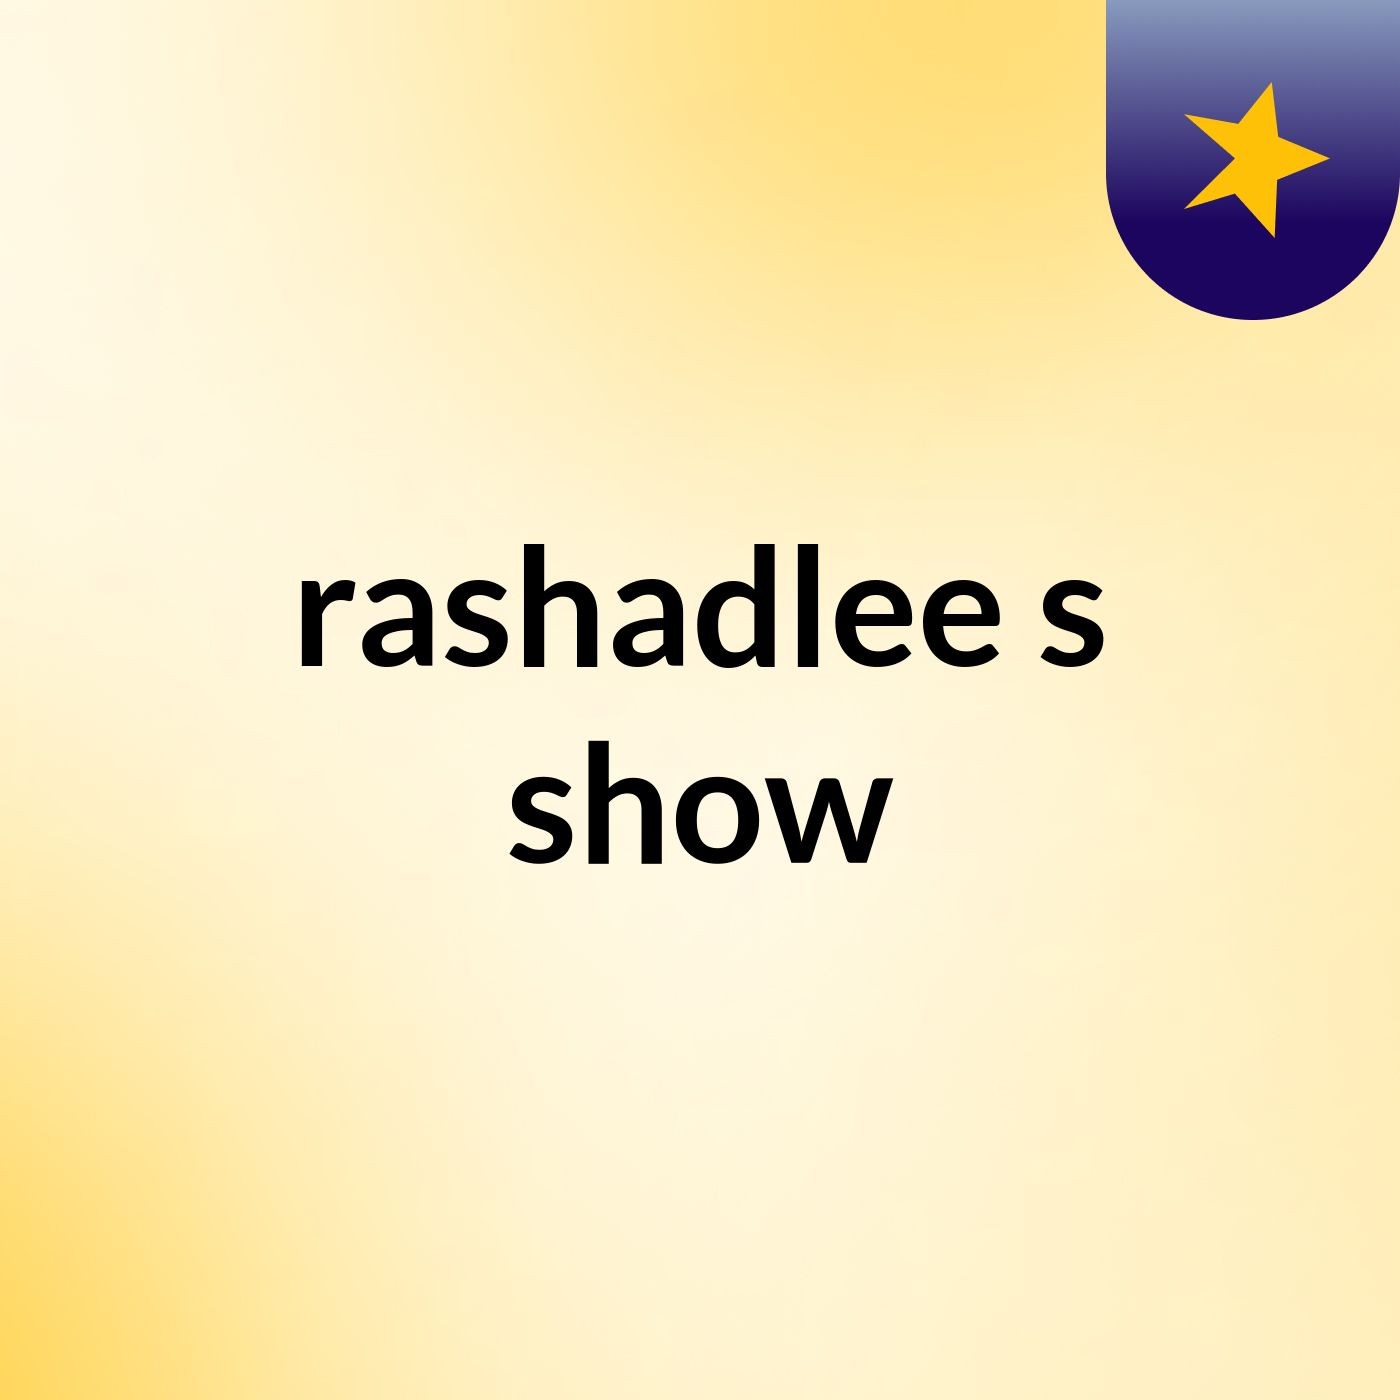 rashadlee's show